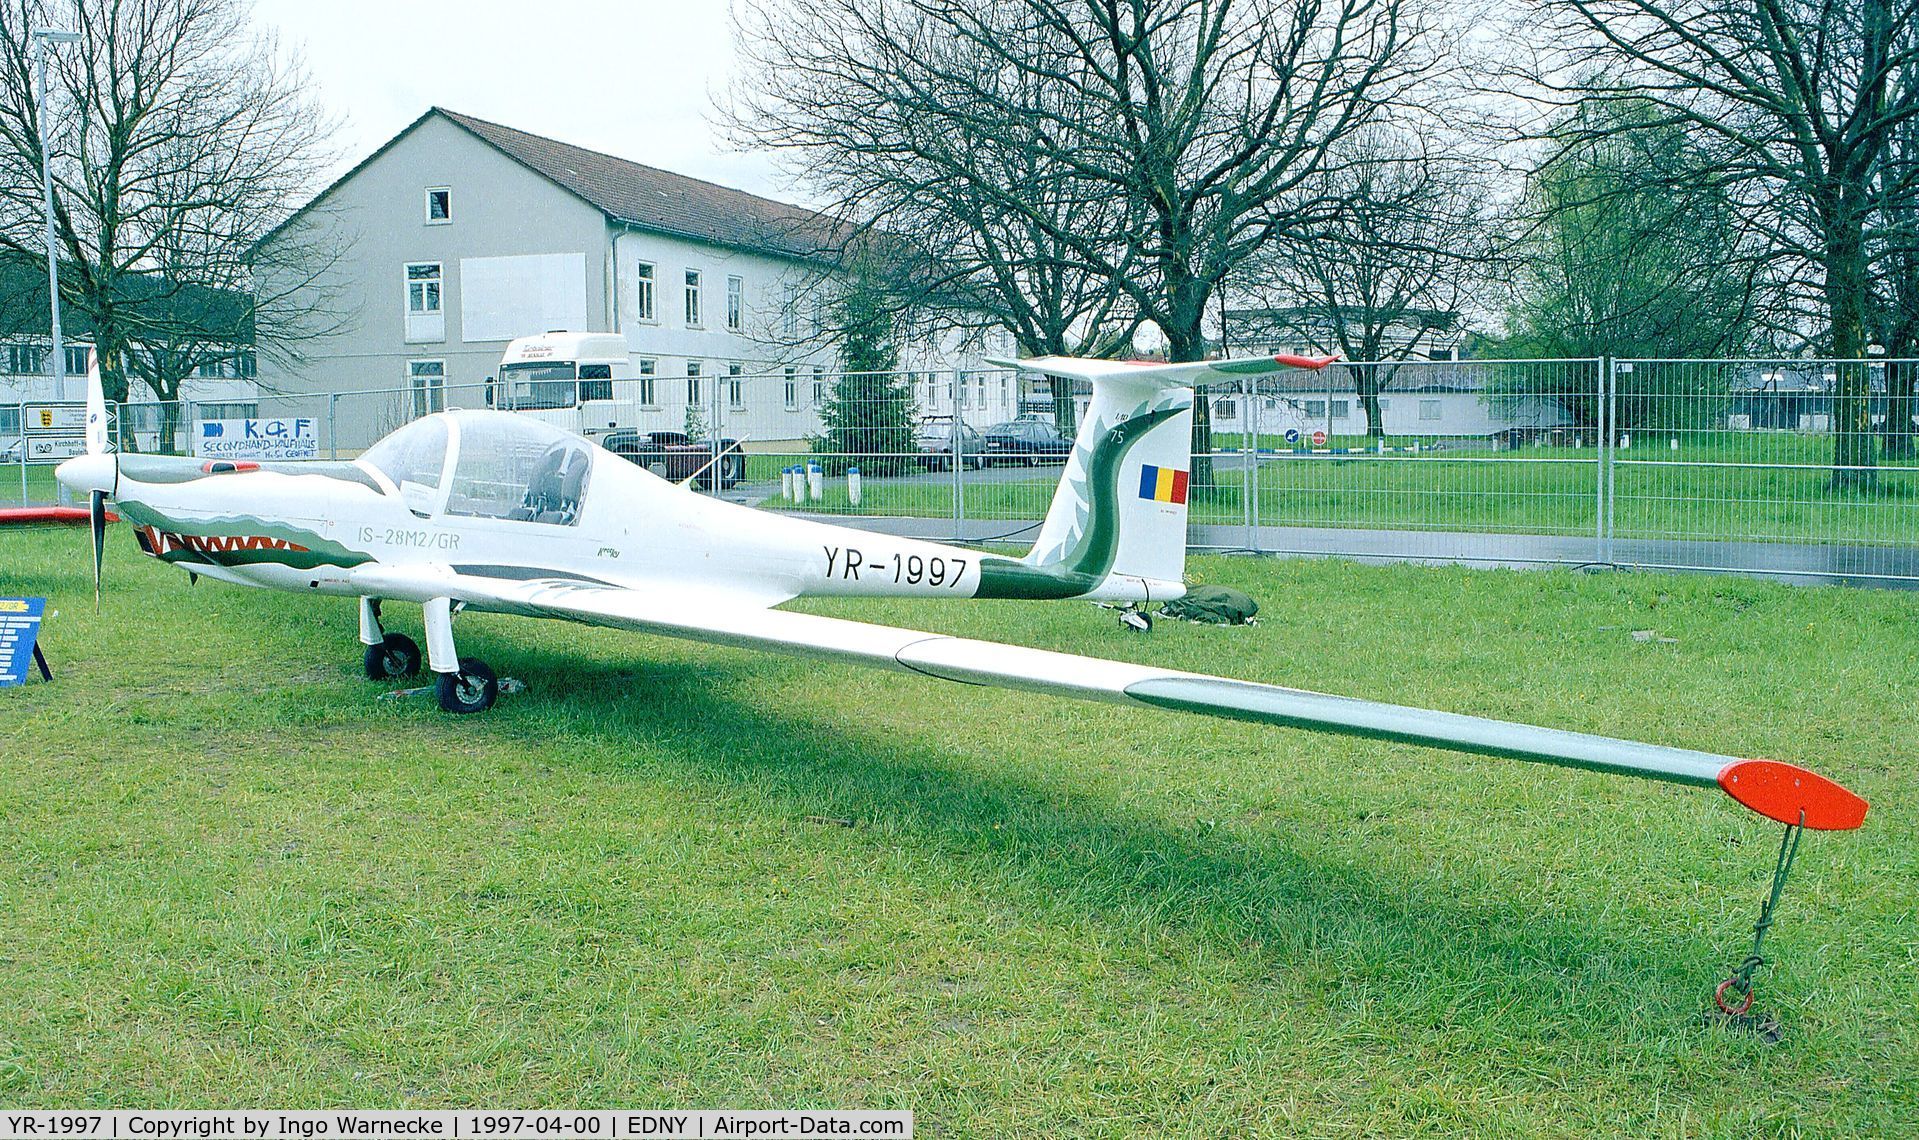 YR-1997, IAR IS-28M2/GR C/N Not found YR-1997, IAR IS-28M2/GR at the Aero 1997, Friedrichshafen